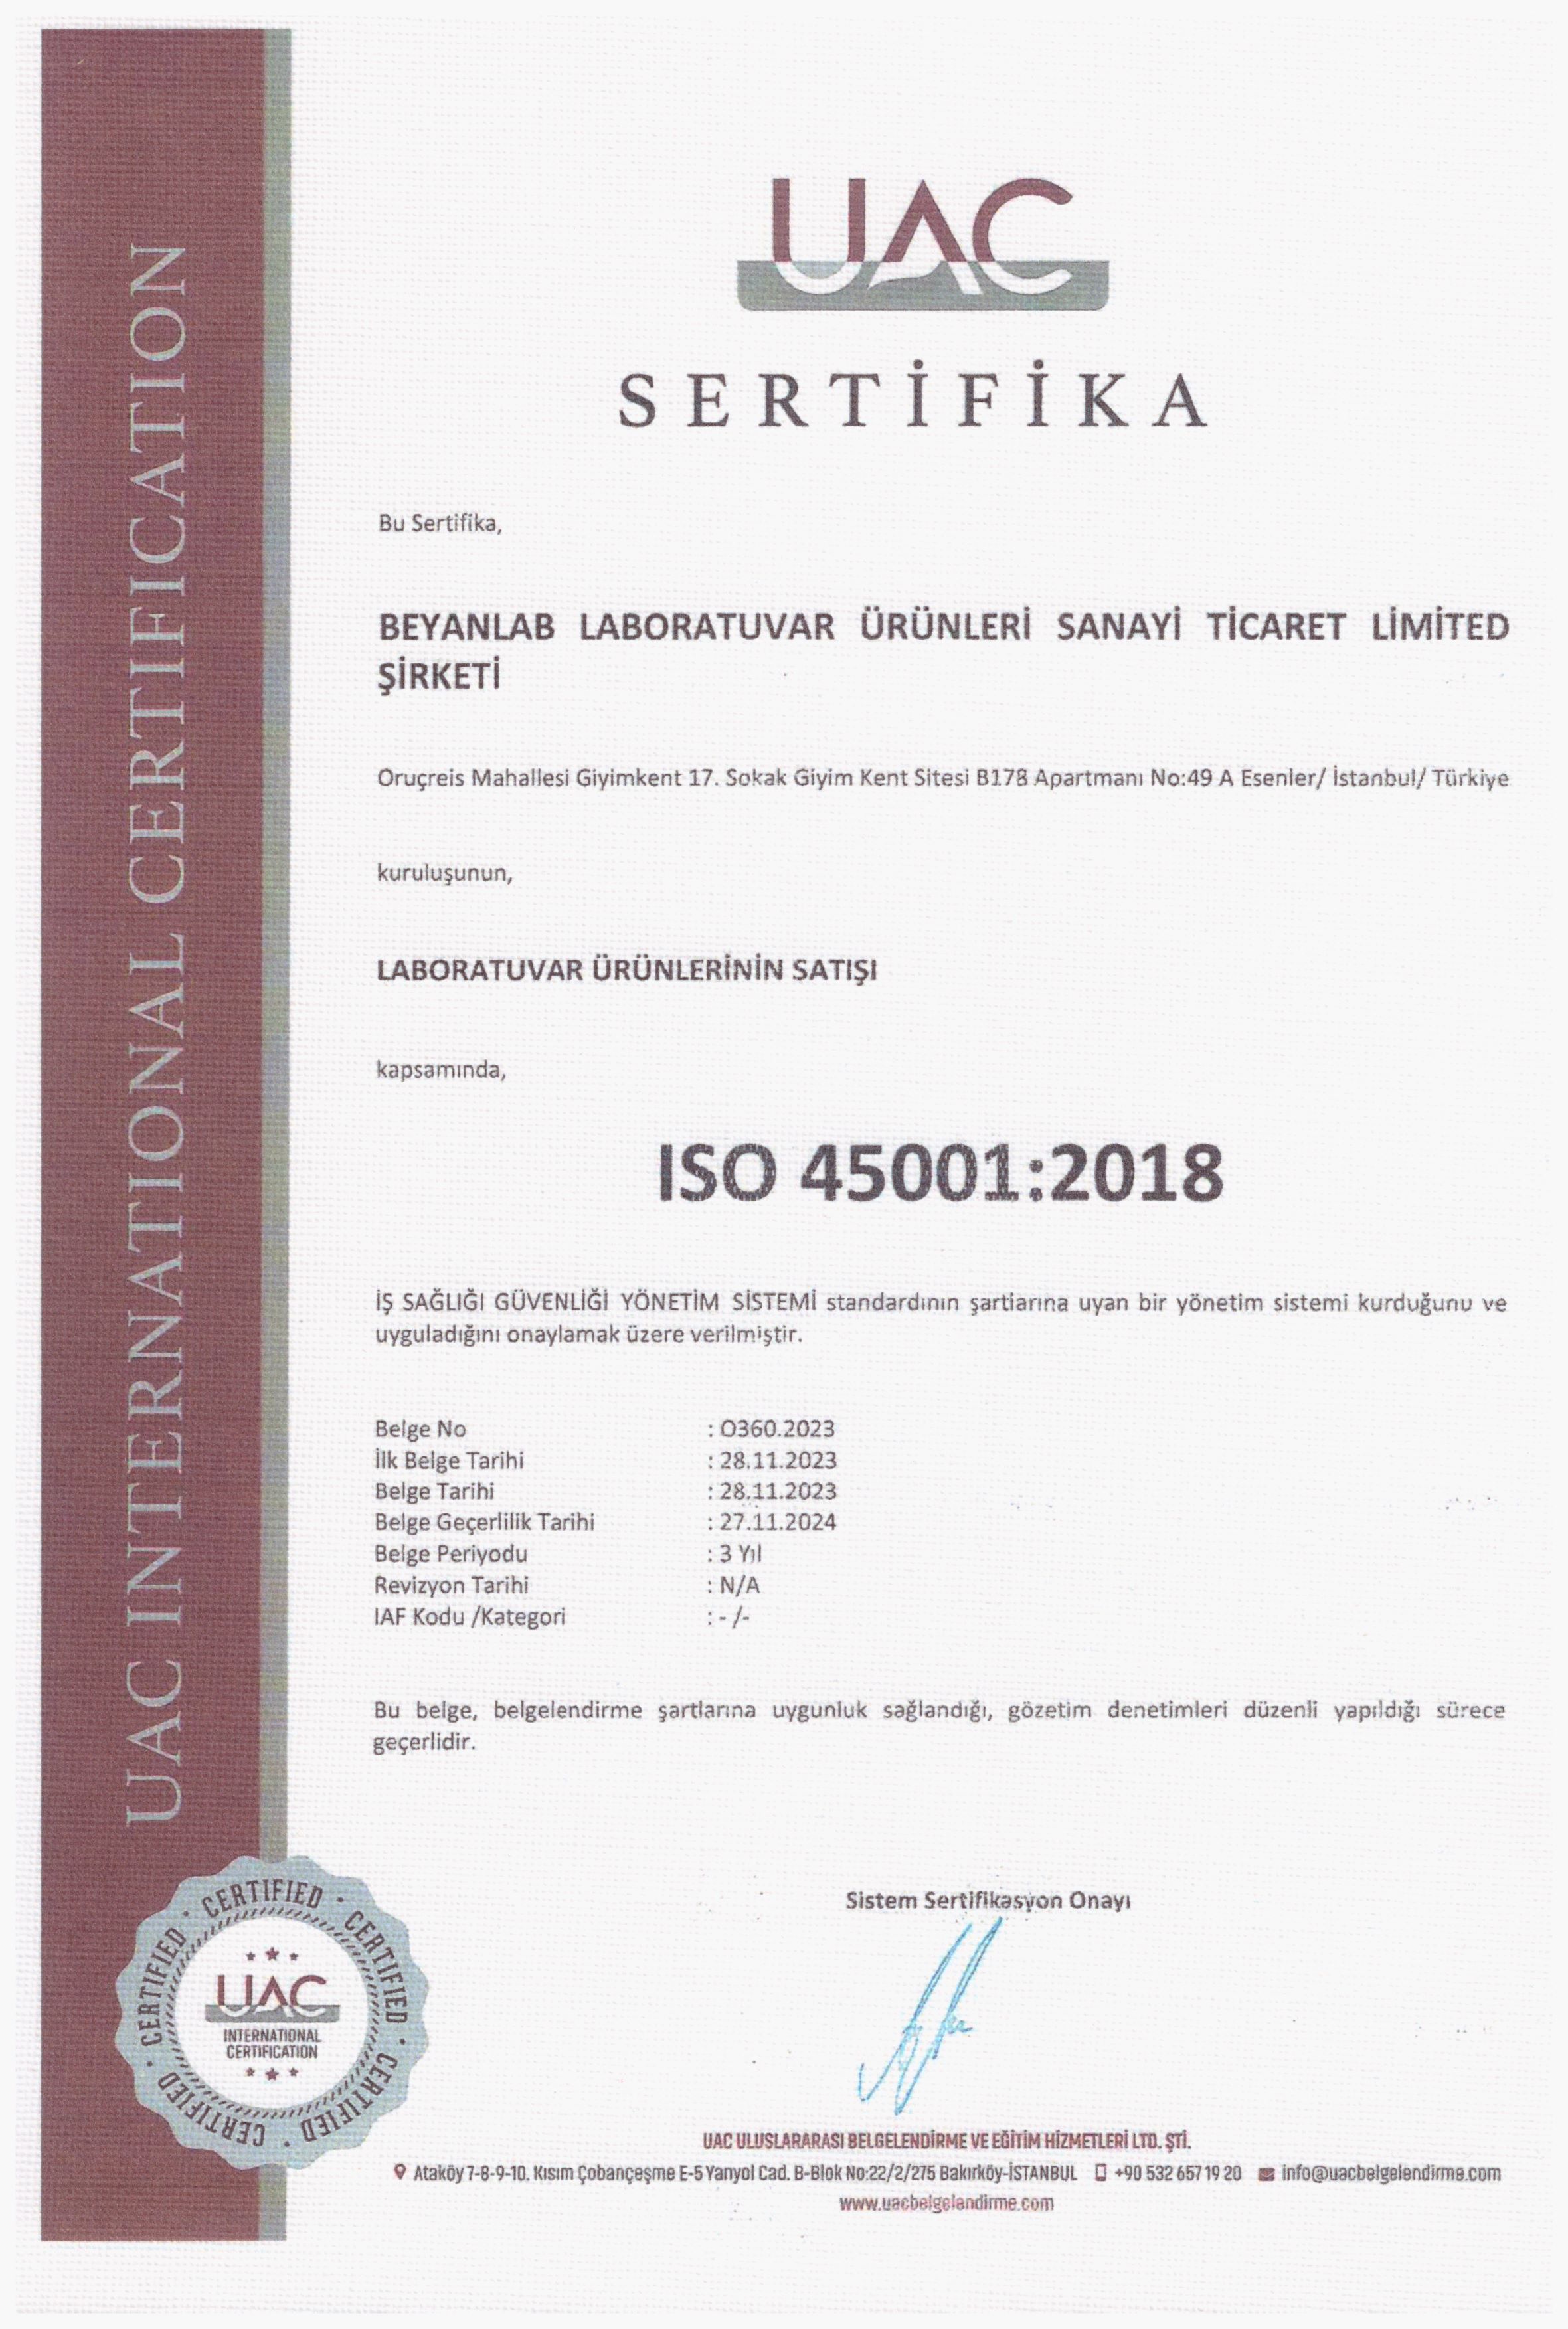 ISO 45001 2018 SERTİFİKA TR